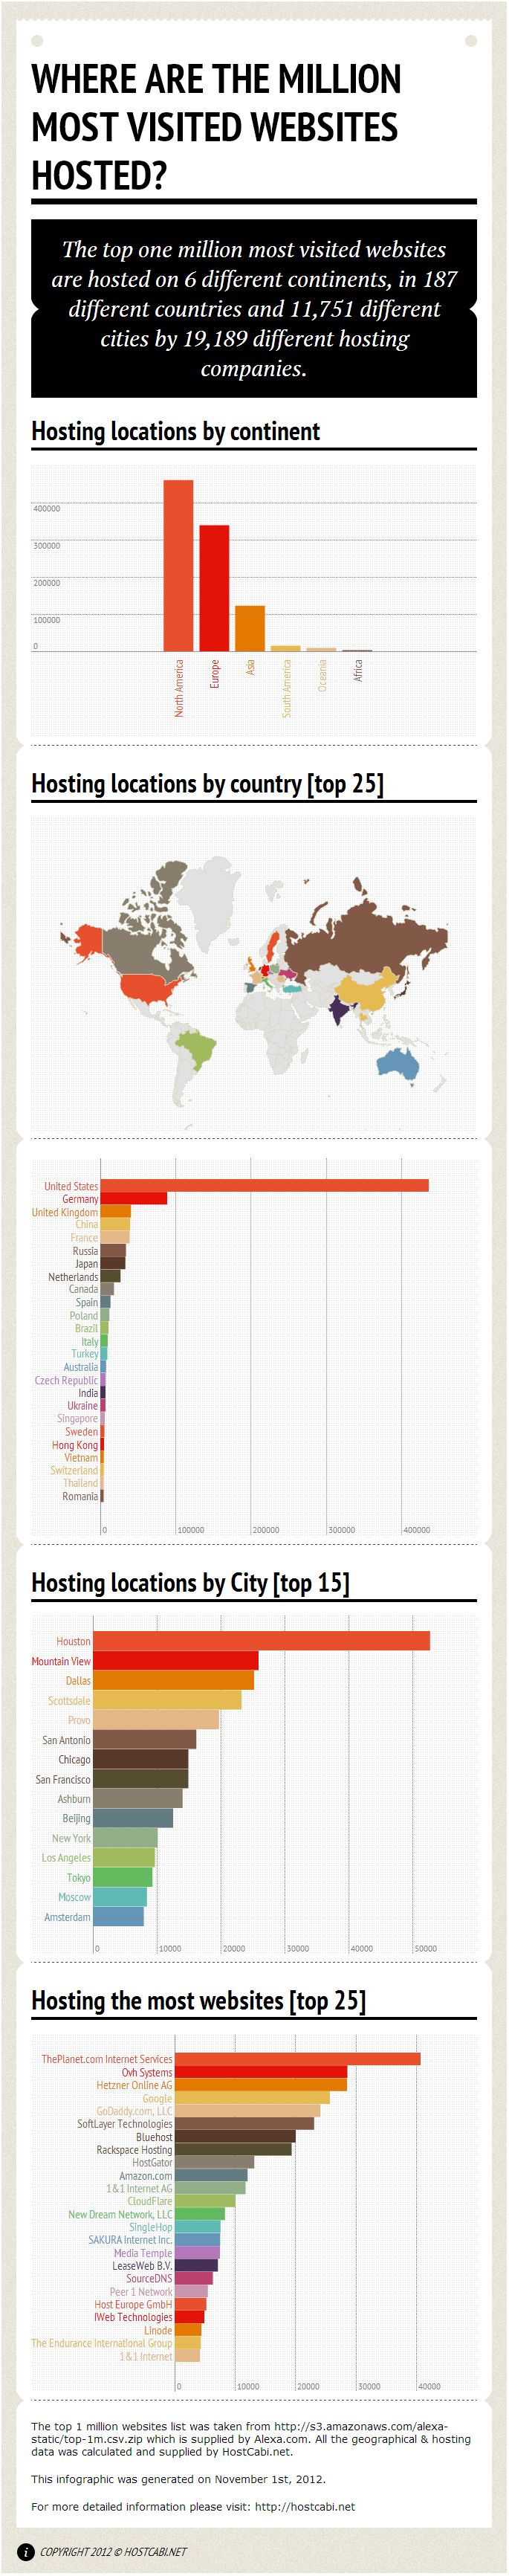 ¿Dónde están alojados el millón de sitios web más visitados del planeta? 1